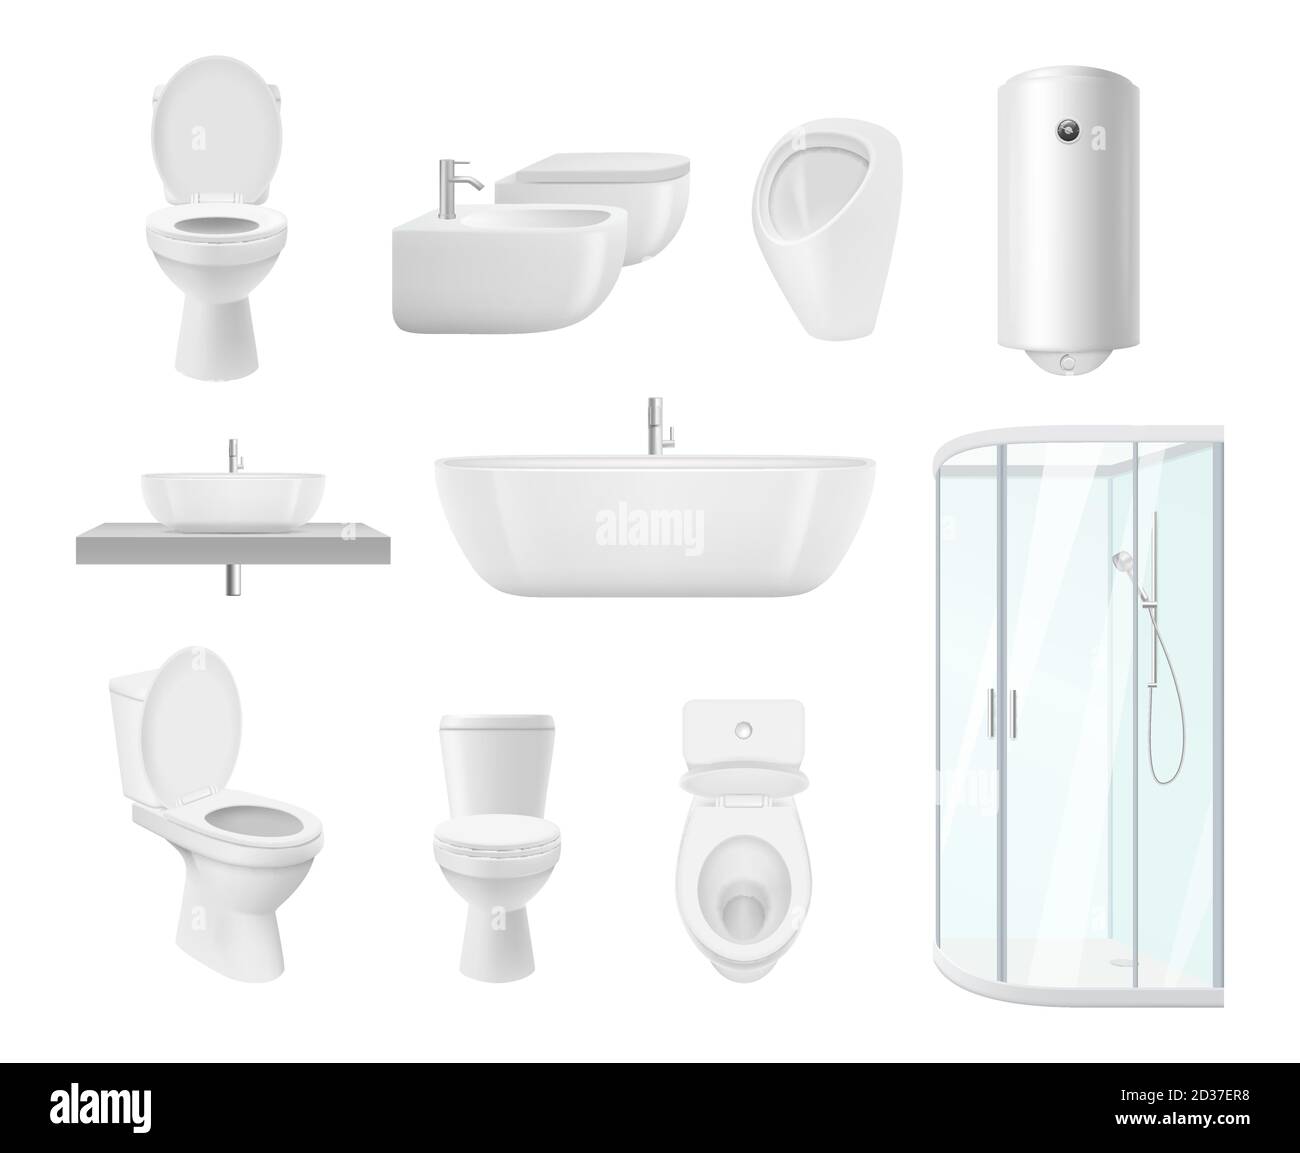 Collection de salle de bains. Toilettes lavabo moderne objets blancs de salle de bains vecteur images réalistes Illustration de Vecteur